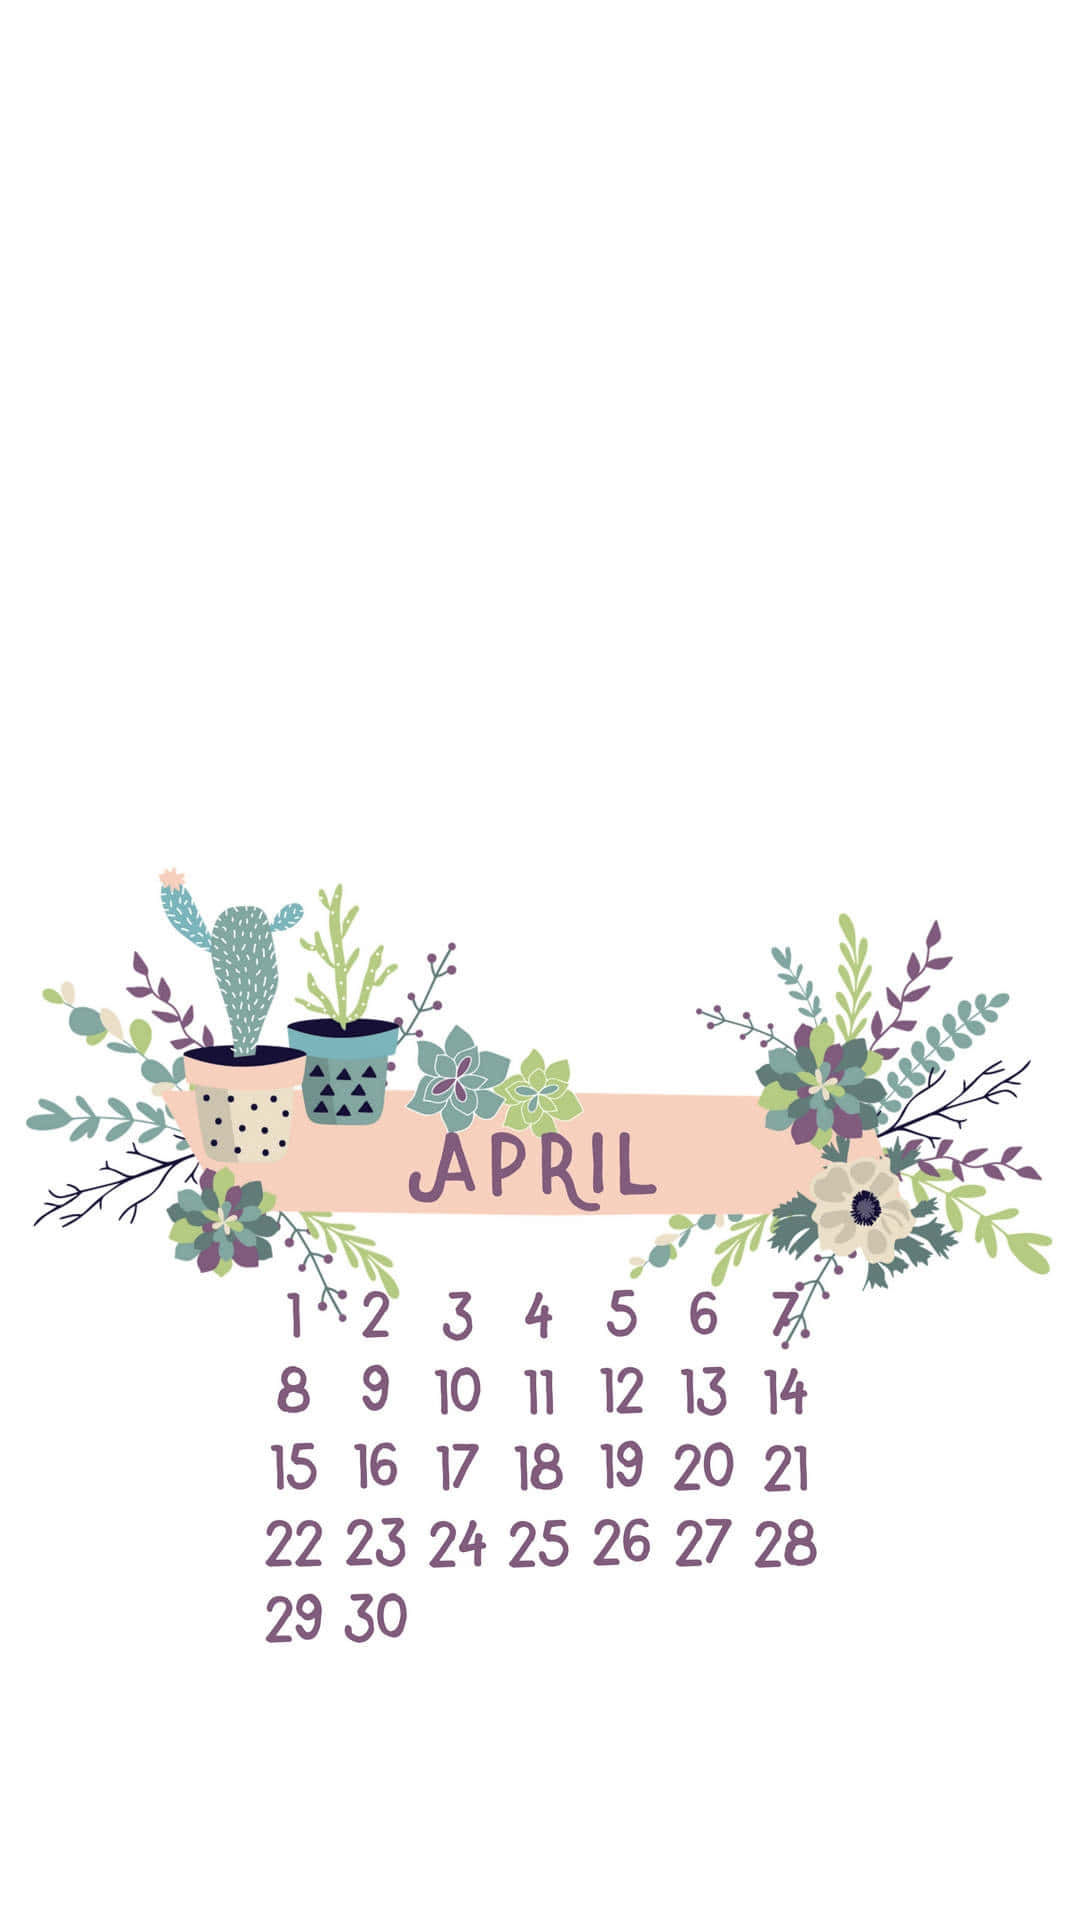 April Calendar Floral Design Wallpaper